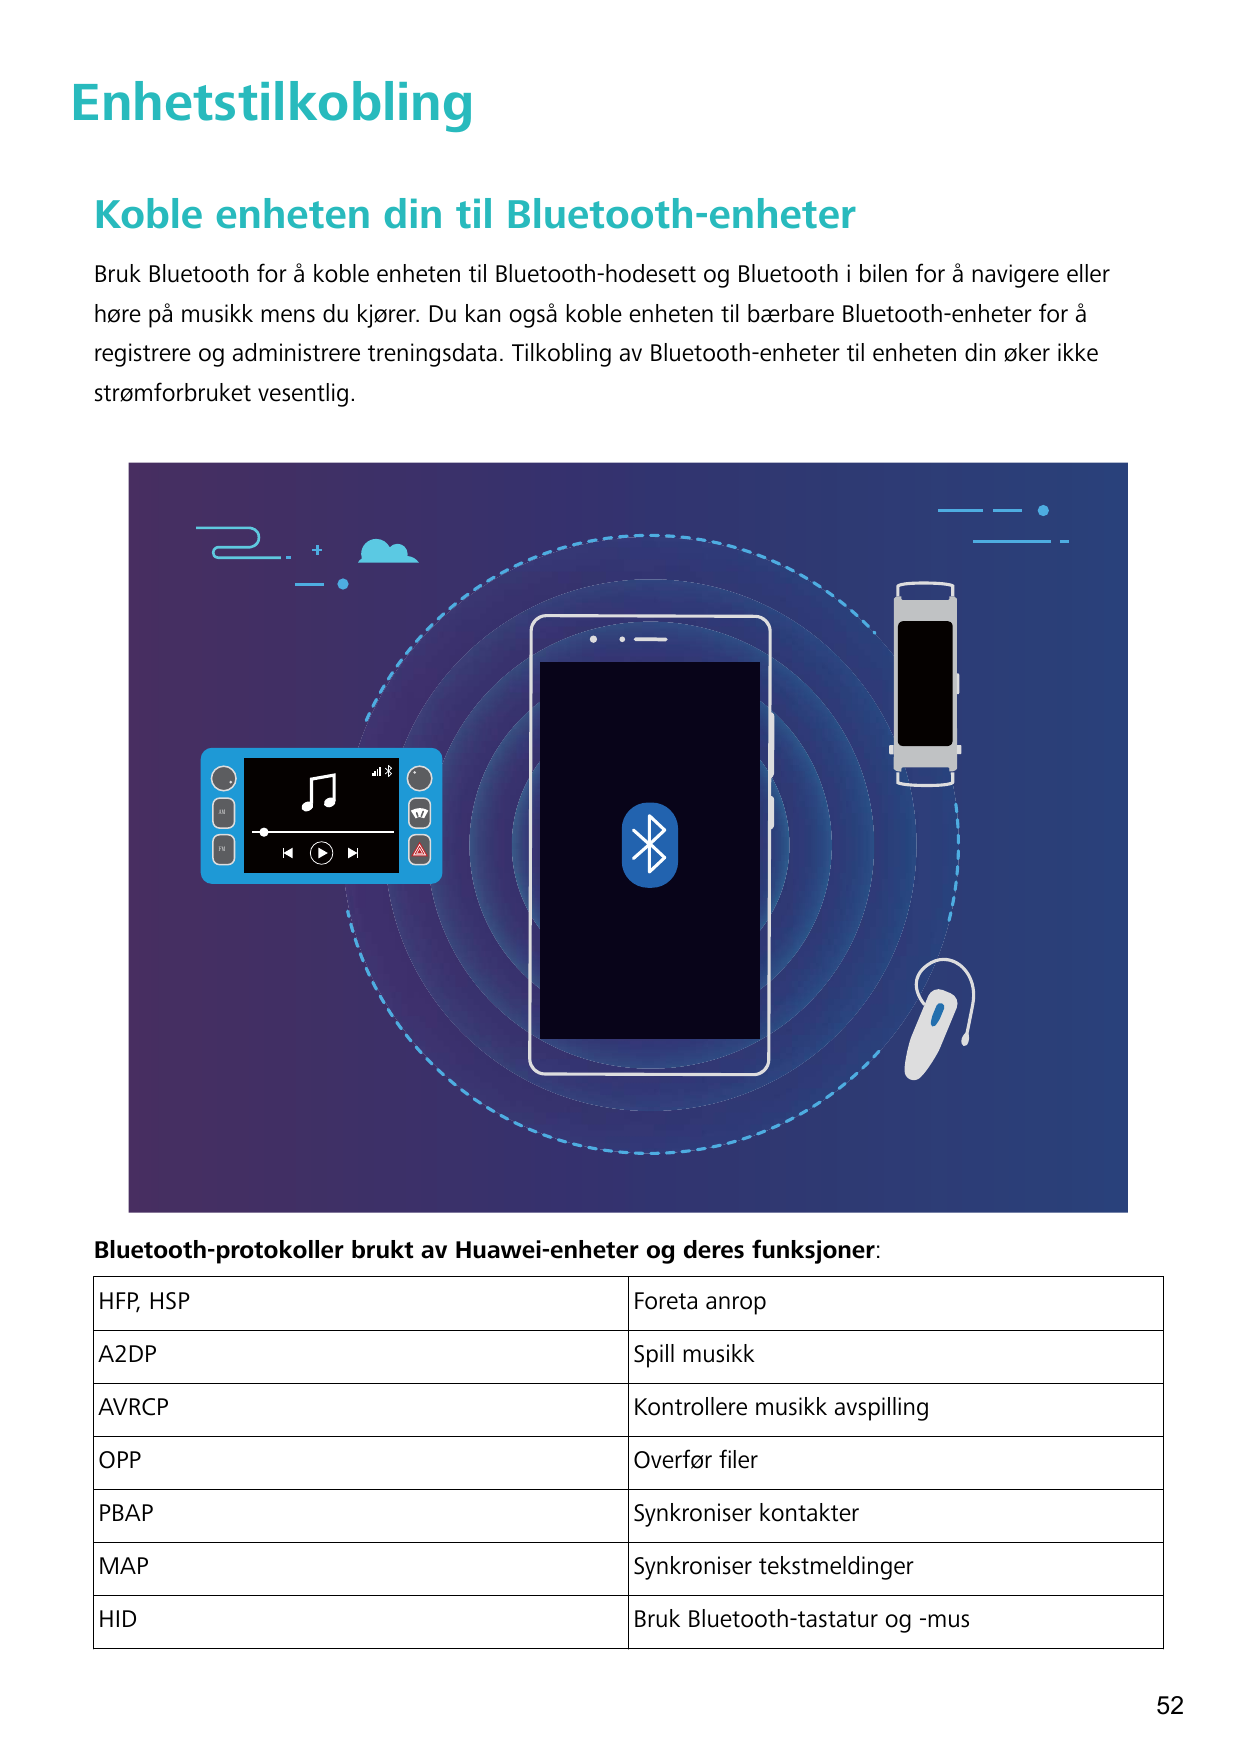 EnhetstilkoblingKoble enheten din til Bluetooth-enheterBruk Bluetooth for å koble enheten til Bluetooth-hodesett og Bluetooth i 